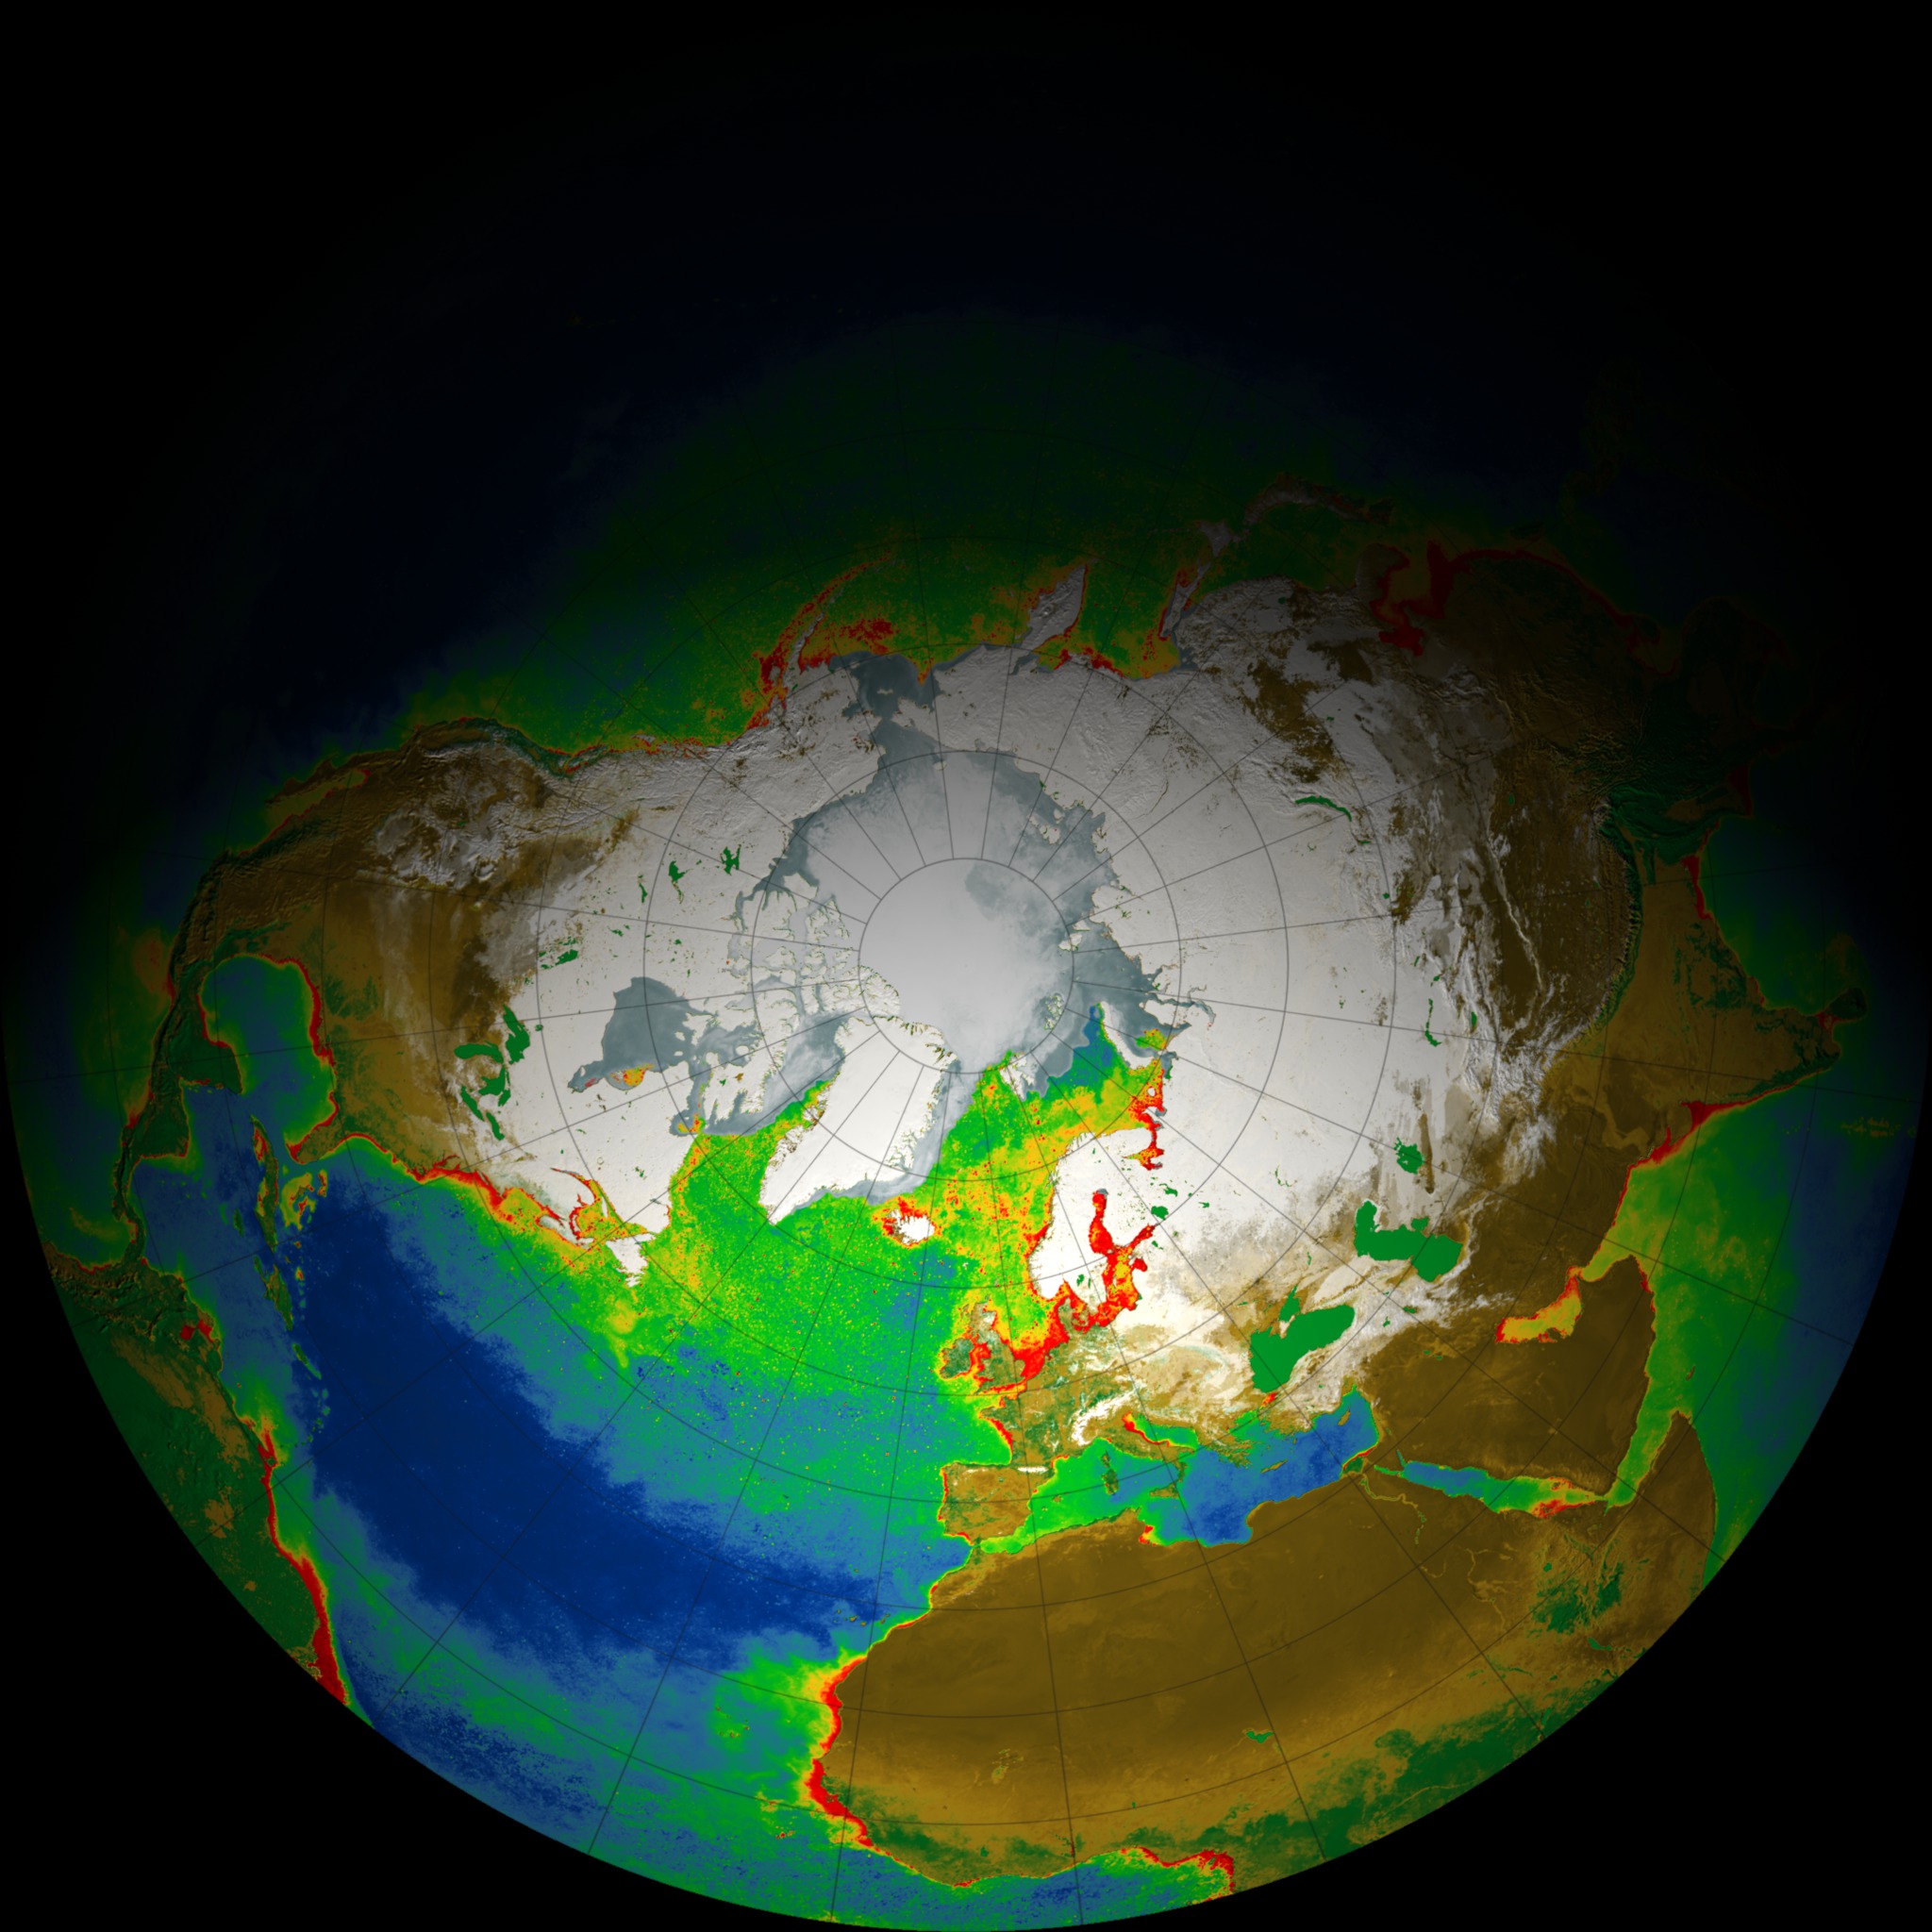 Hemisphere view of the global biosphere (fisheye lens render)